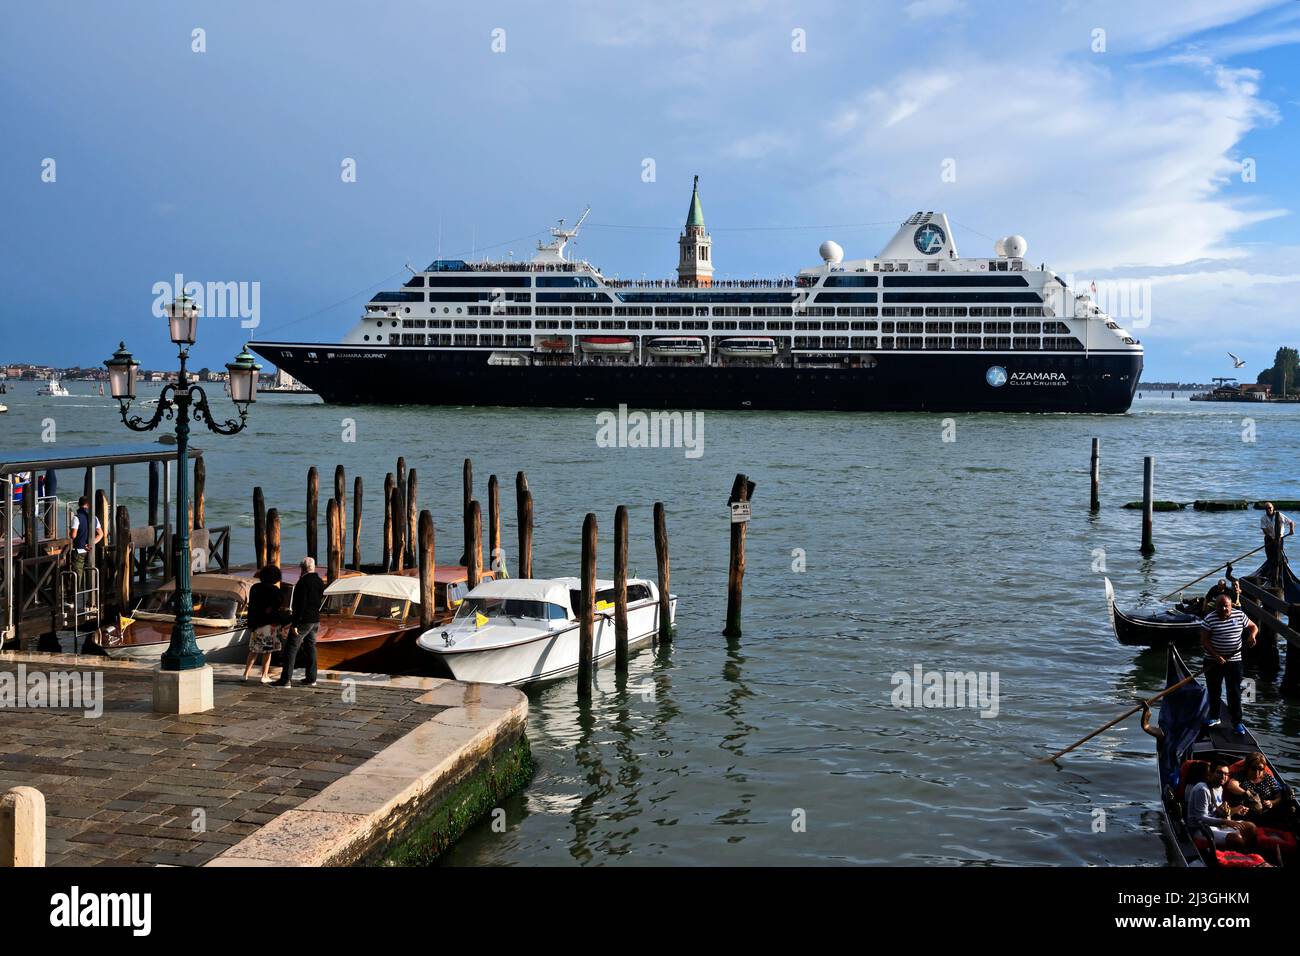 Tourist ship in Venetian Lagoon, Italy Stock Photo